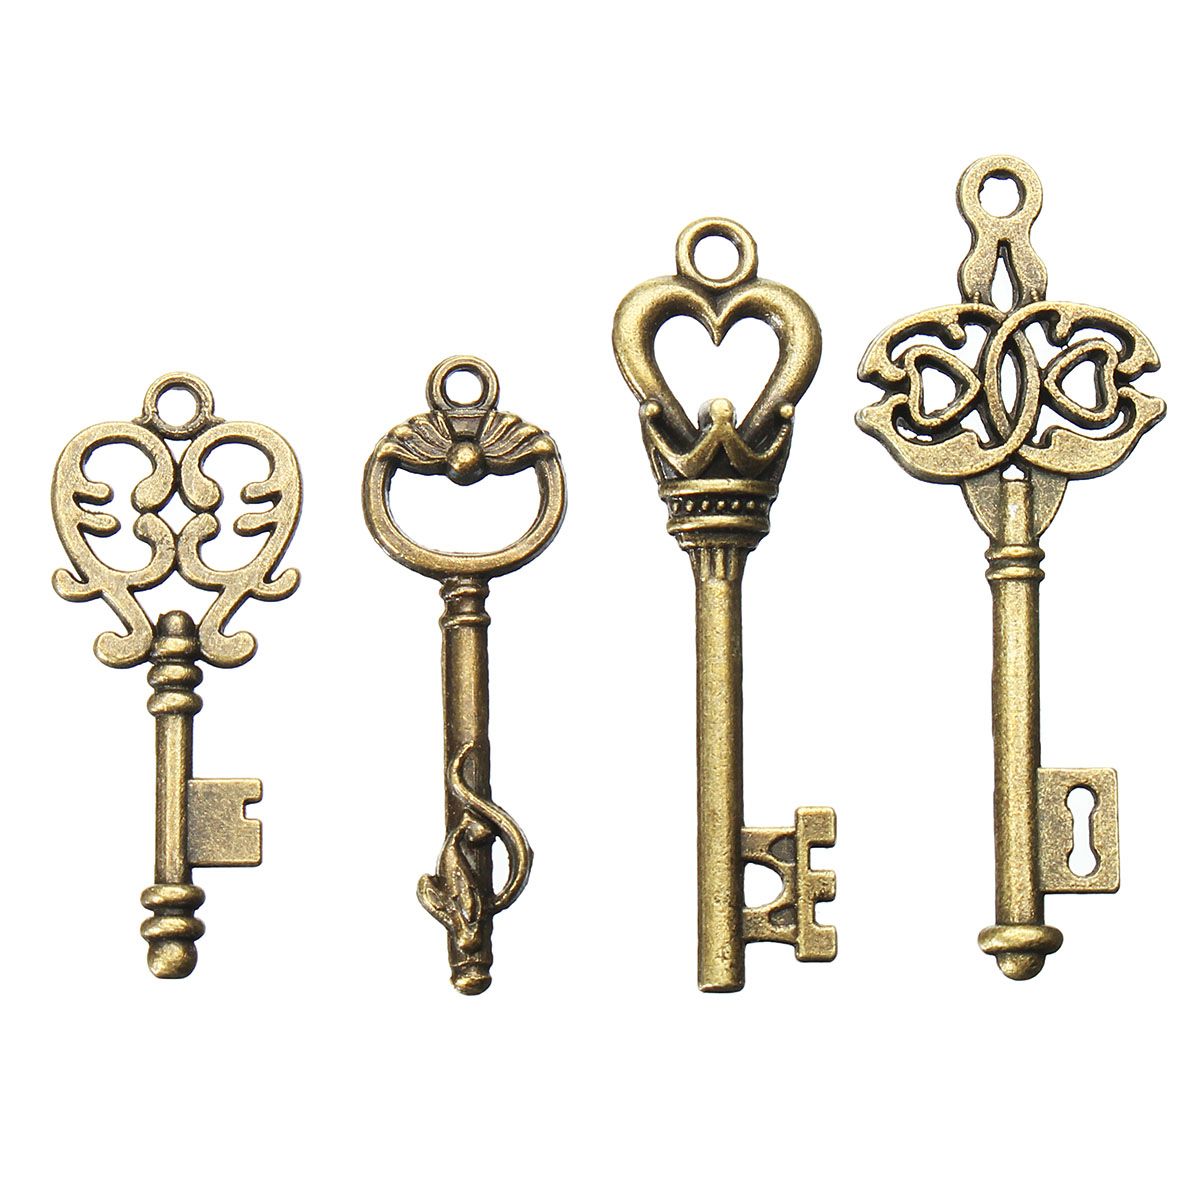 4Pcs-Vintage-Bronze-Key-For-Pendant-Necklace-Bracelet-DIY-Handmade-Accessories-Decoration-1192633